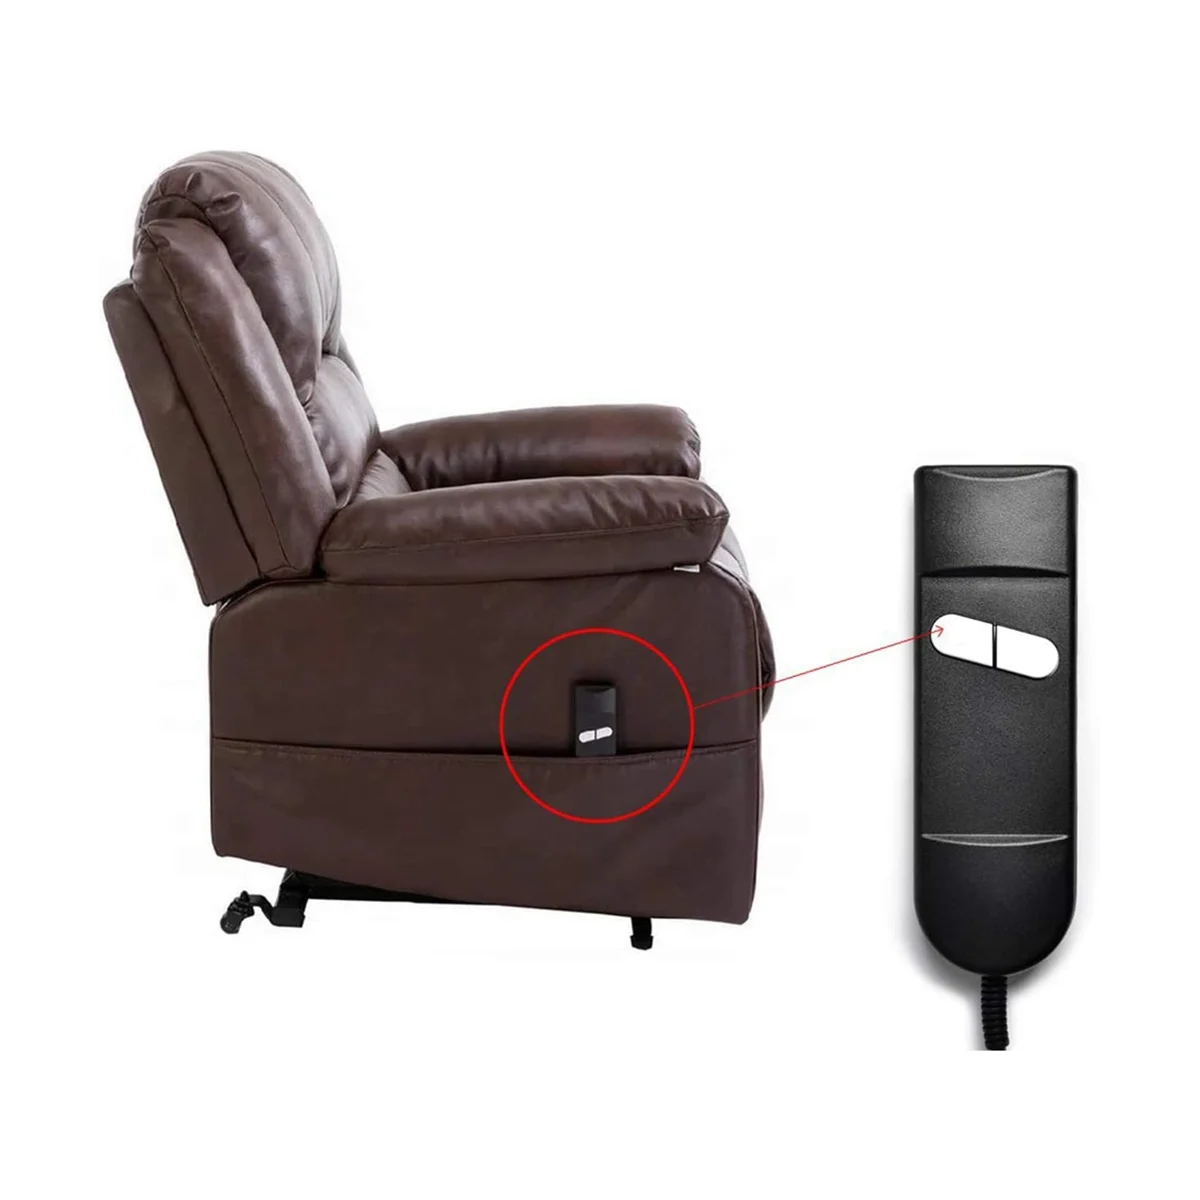  Замена пульта дистанционного управления креслом, 5-контактный 2-кнопочный пульт дистанционного управления с электроприводом для Okin Limoss Pride - локоть